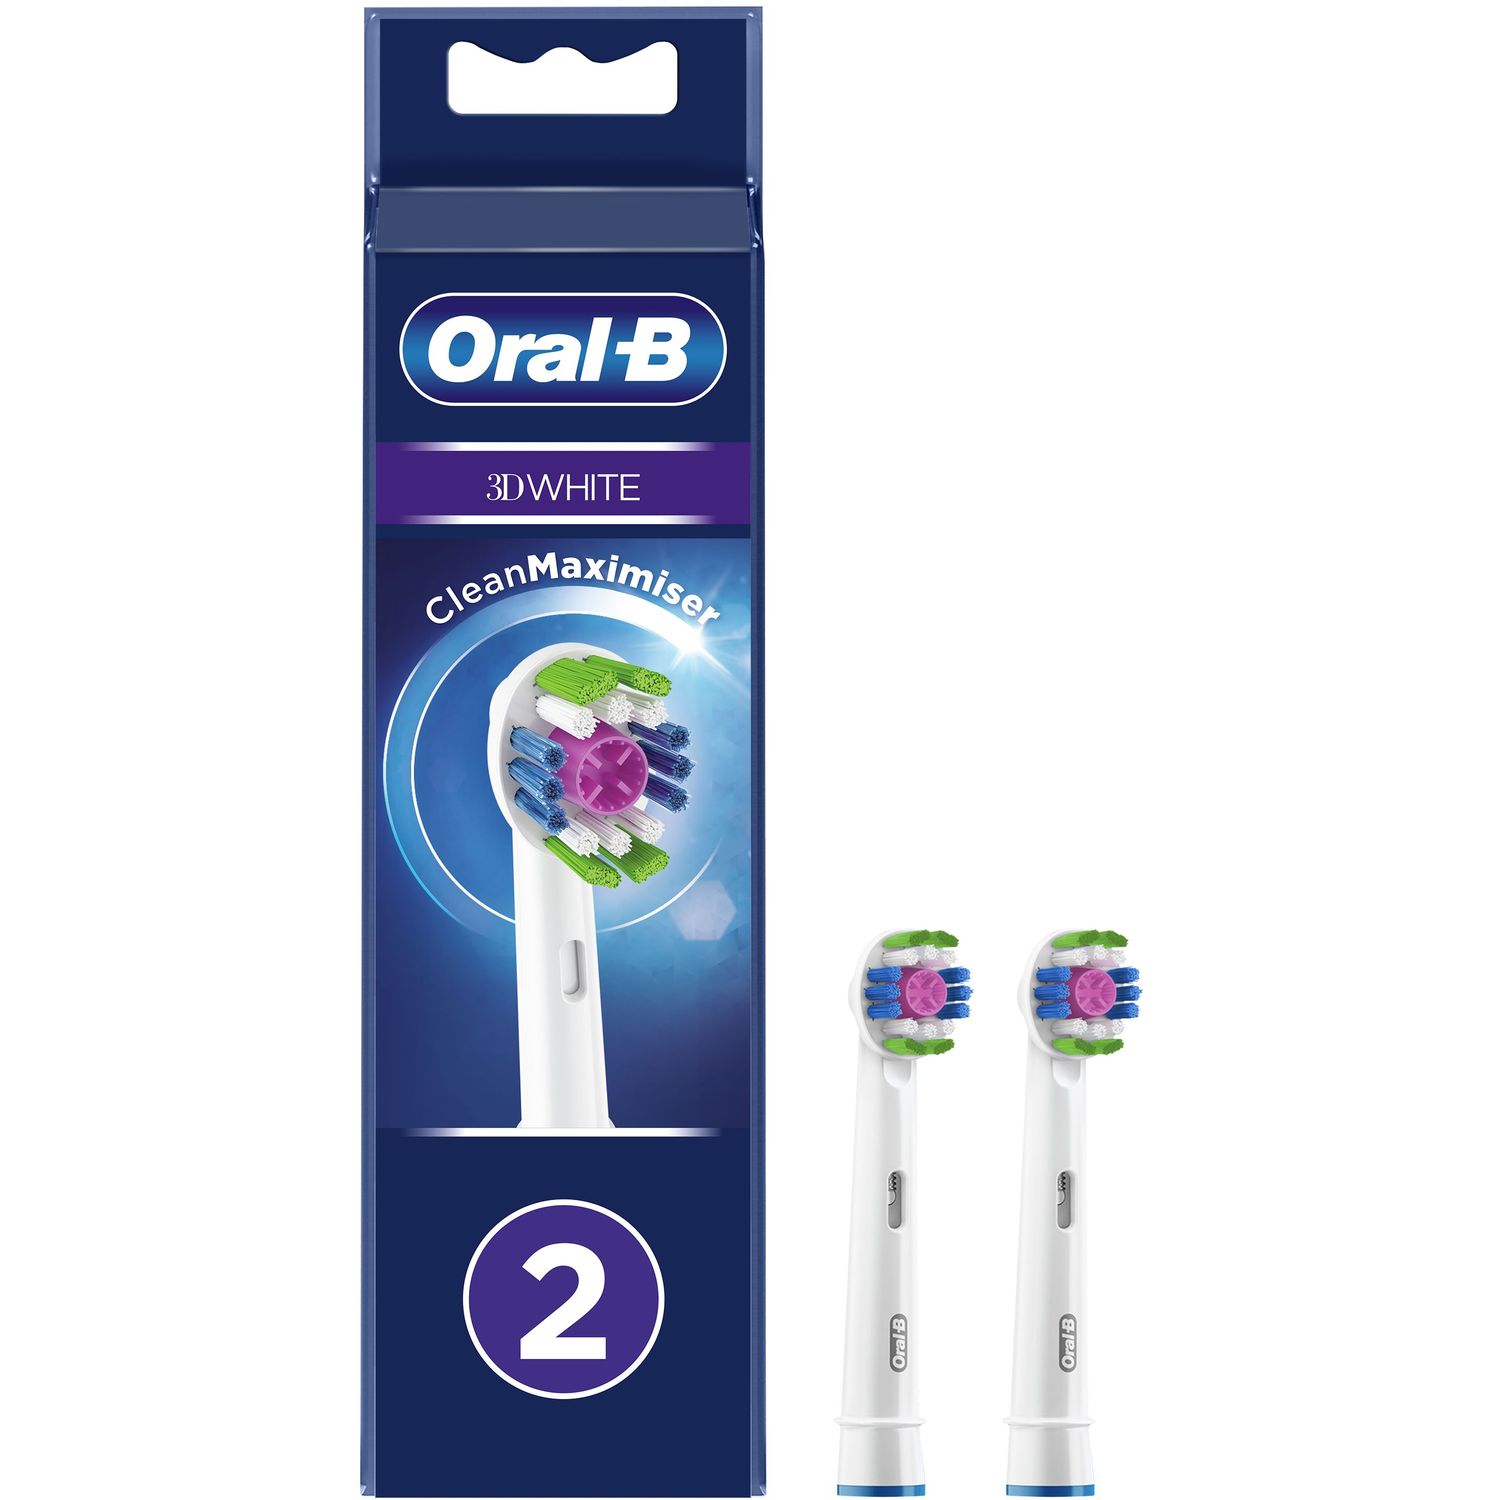 Насадки для електричної зубної щітки Oral-B 3D White CleanMaximiser, 2 шт. - фото 1